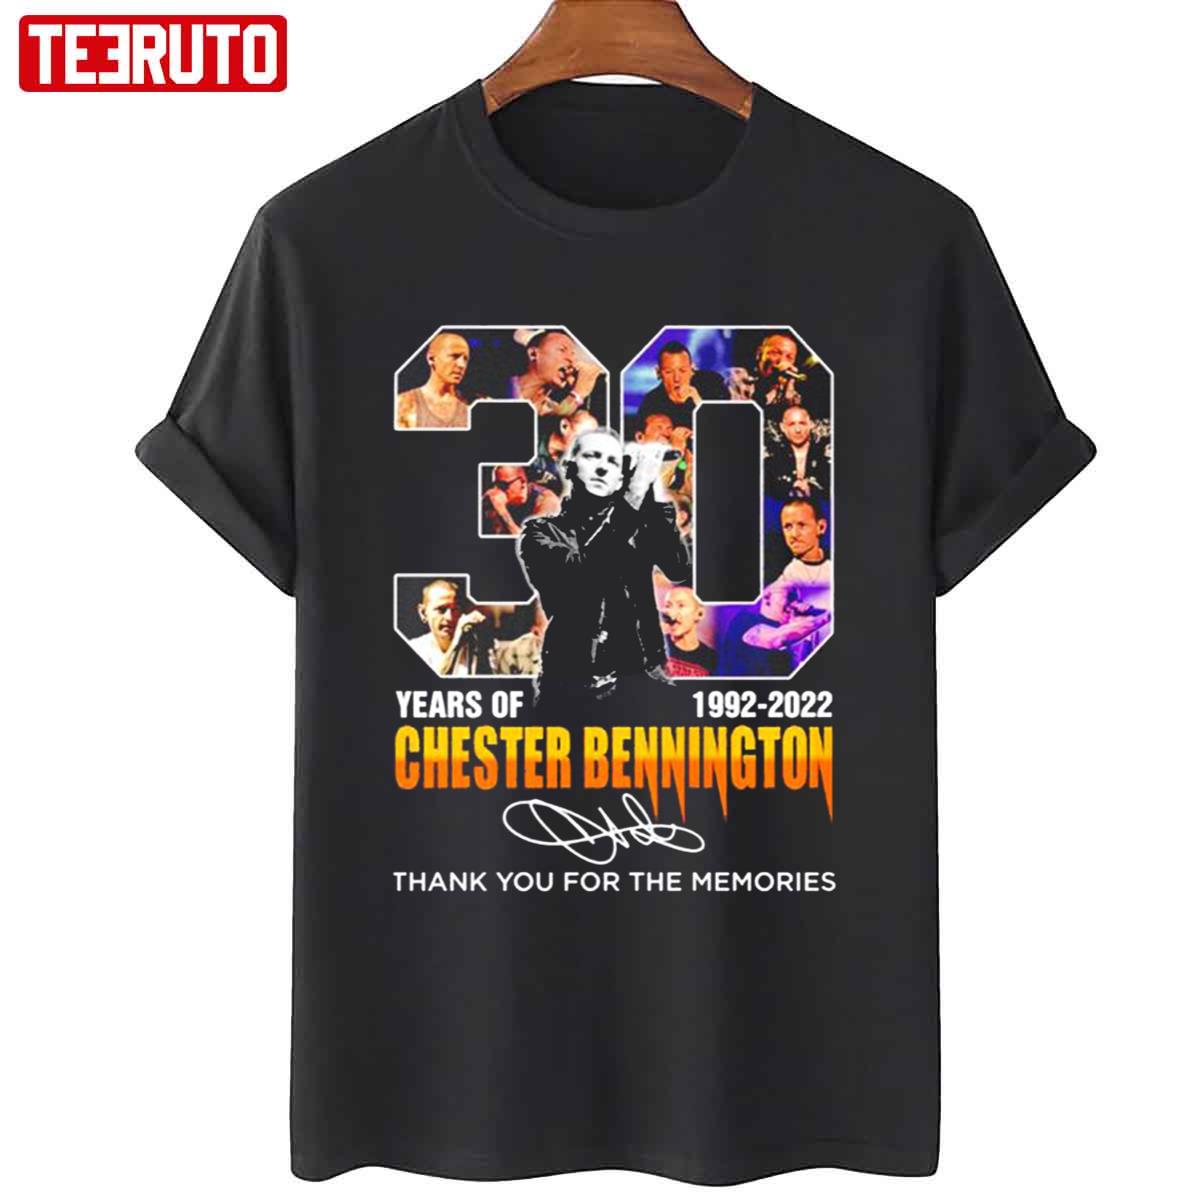 Chester Bennington Signatures 30 Years 1992 2022 Unisex T-Shirt - Teeruto